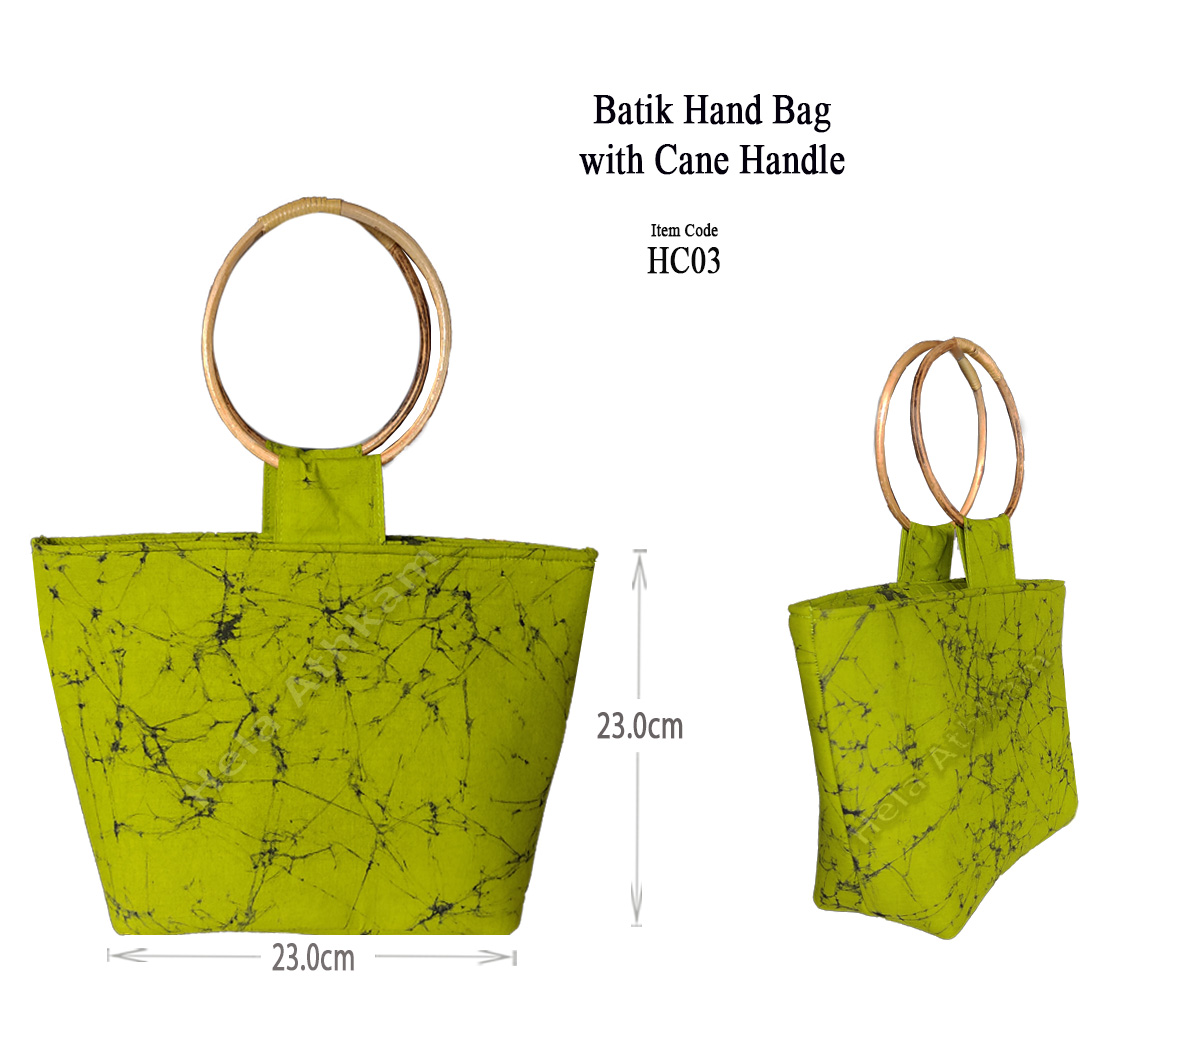 හෙළ අත්කම් - Batik Handbag with Cane Handle - HC03